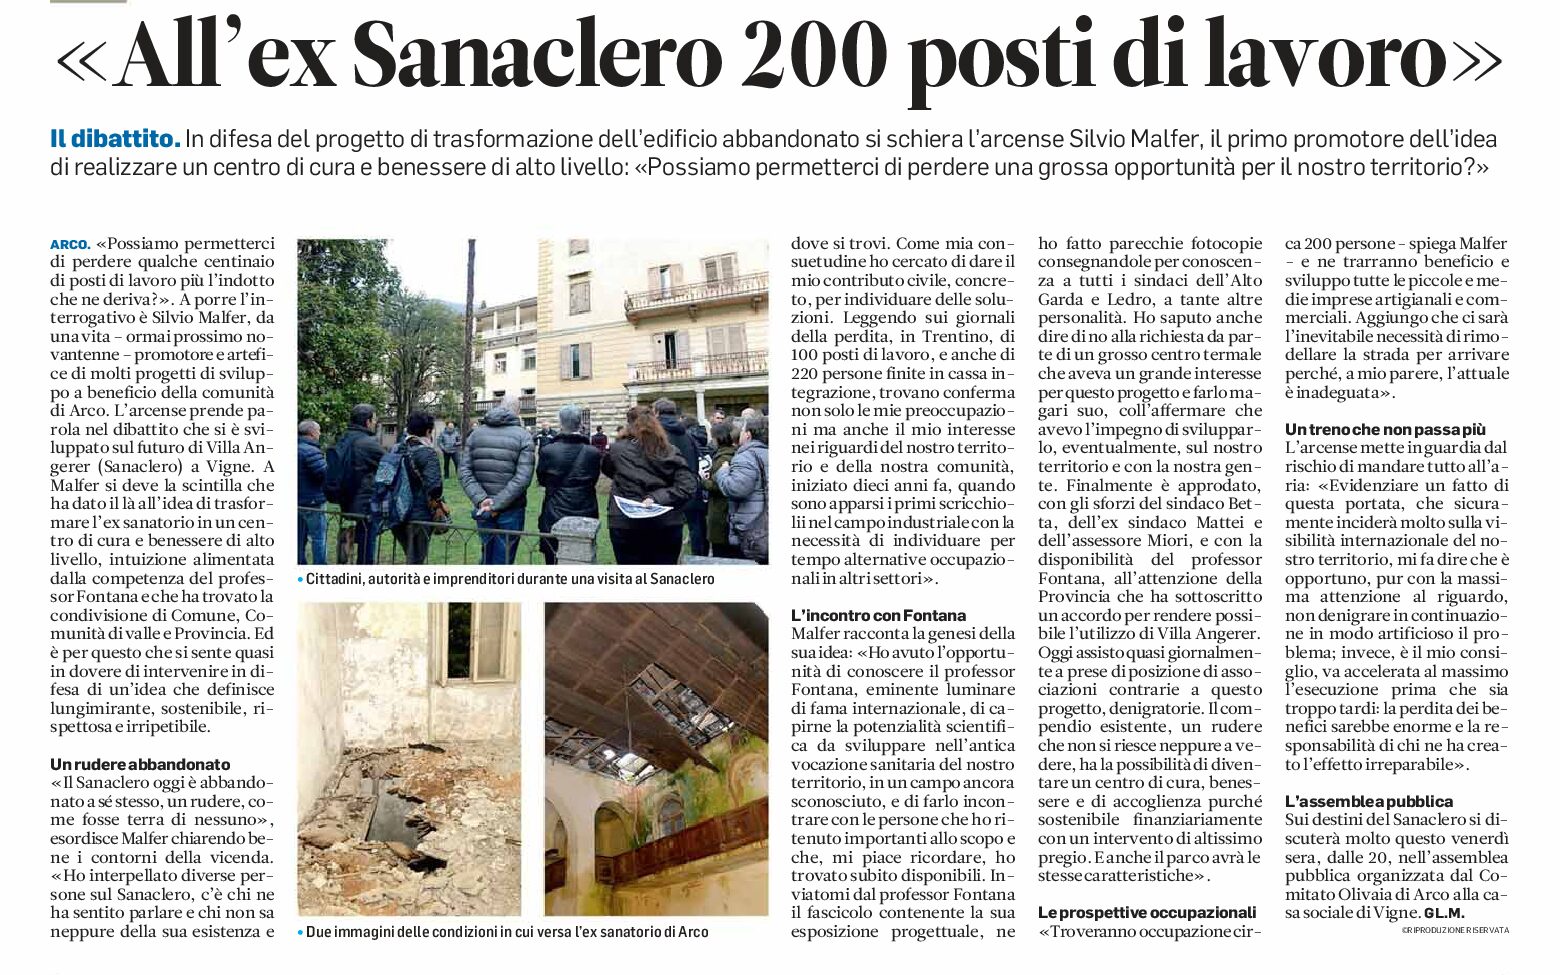 Arco ex Sanaclero: 200 posti di lavoro. Assemblea pubblica venerdì 18 ottobre alle 20, alla casa sociale di Vigne